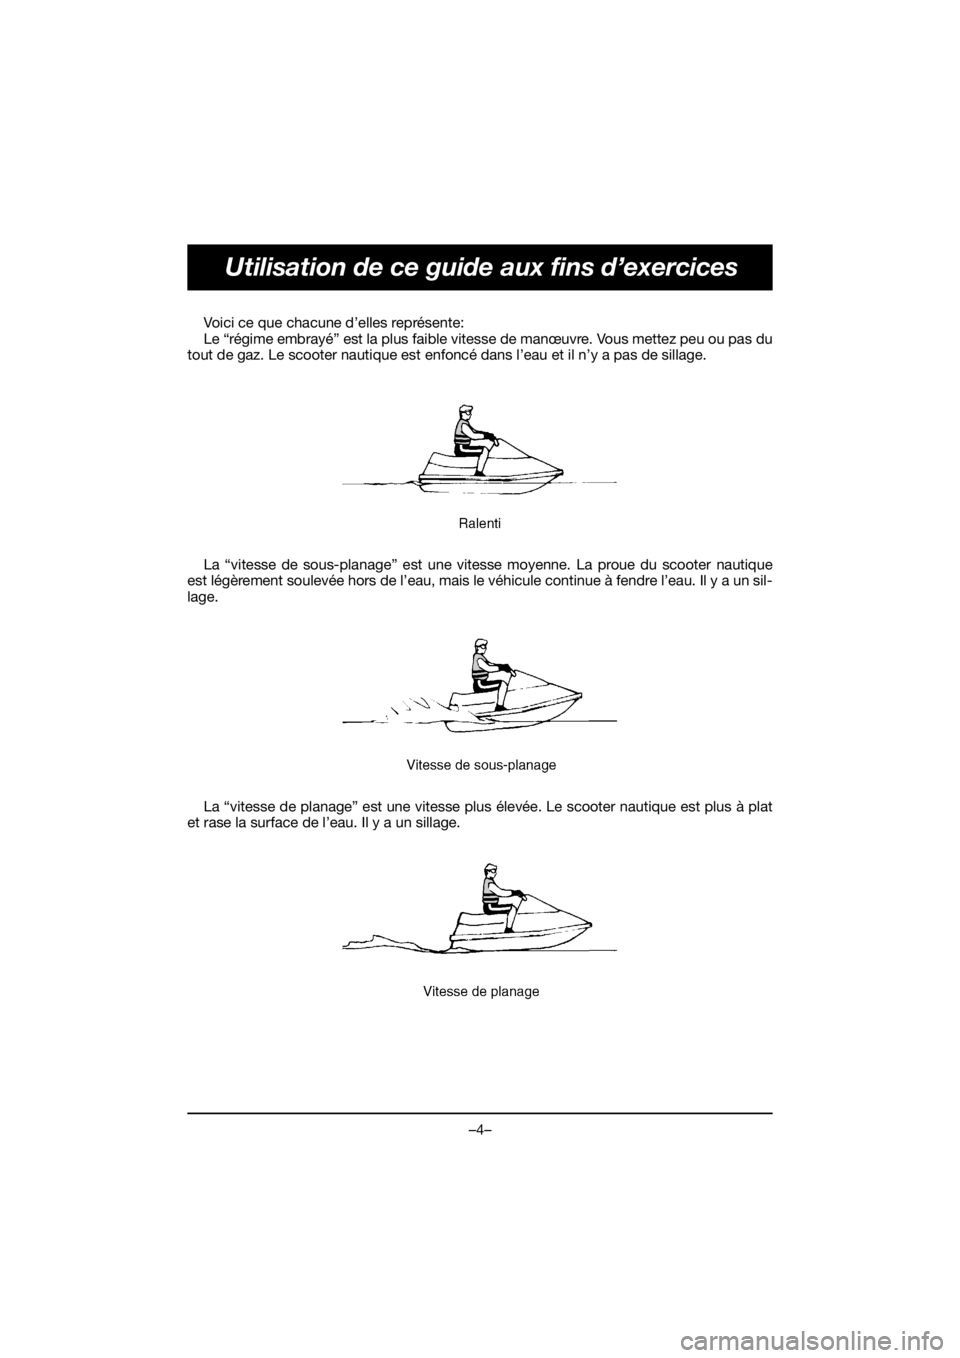 YAMAHA FJR1300 2019 Owners Guide –4–
Utilisation de ce guide aux fins d’exercices
Voici ce que chacune d’elles représente: 
Le “régime embrayé” est la plus faible vitesse de manœuvre. Vous mettez peu ou pas du
tout de